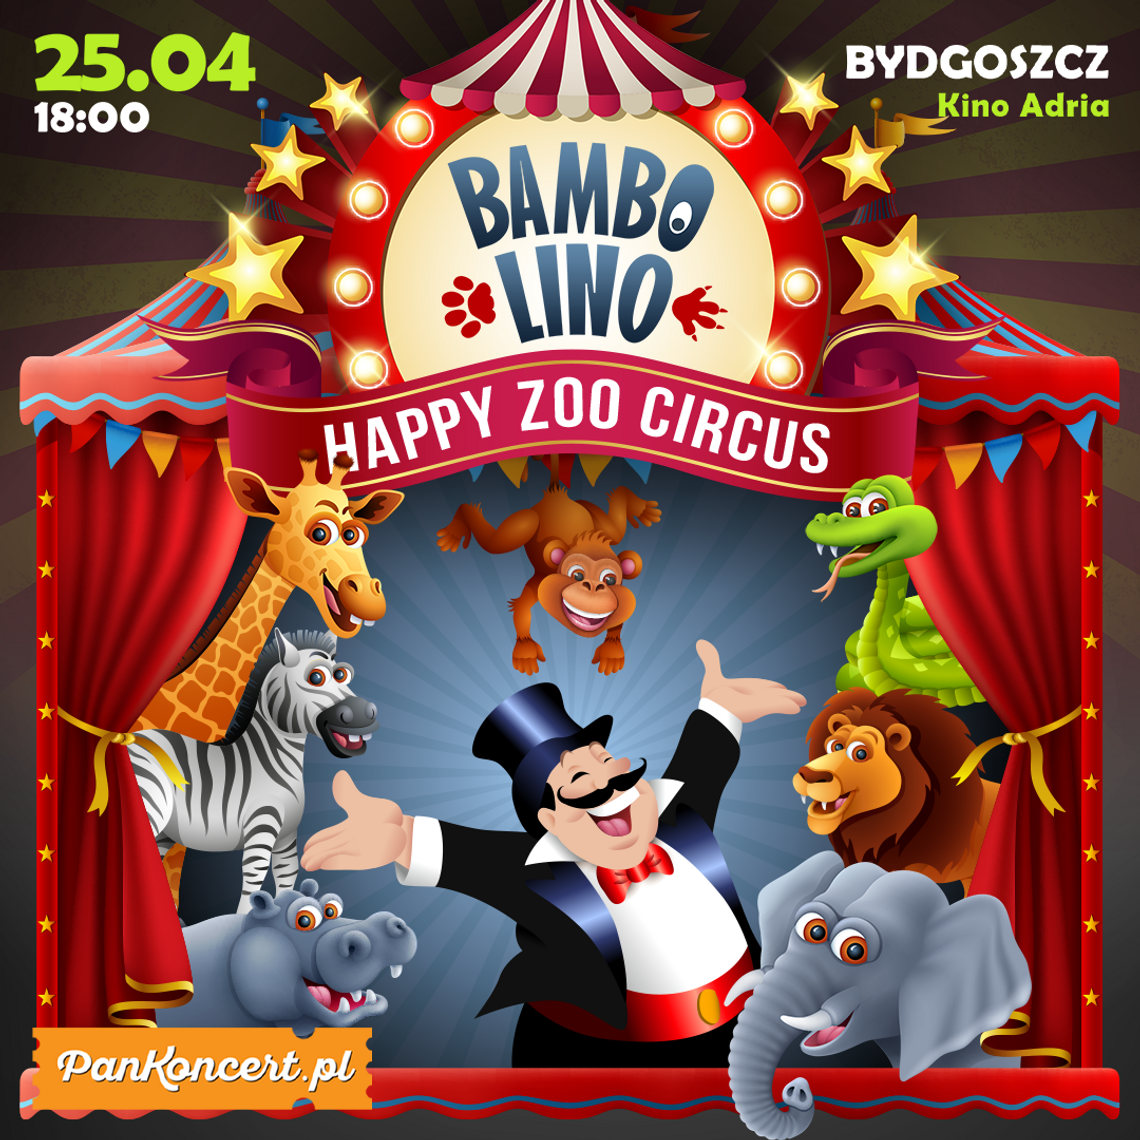 Jedyny na świecie cyrk szczęśliwych zwierząt w Bydgoszczy!